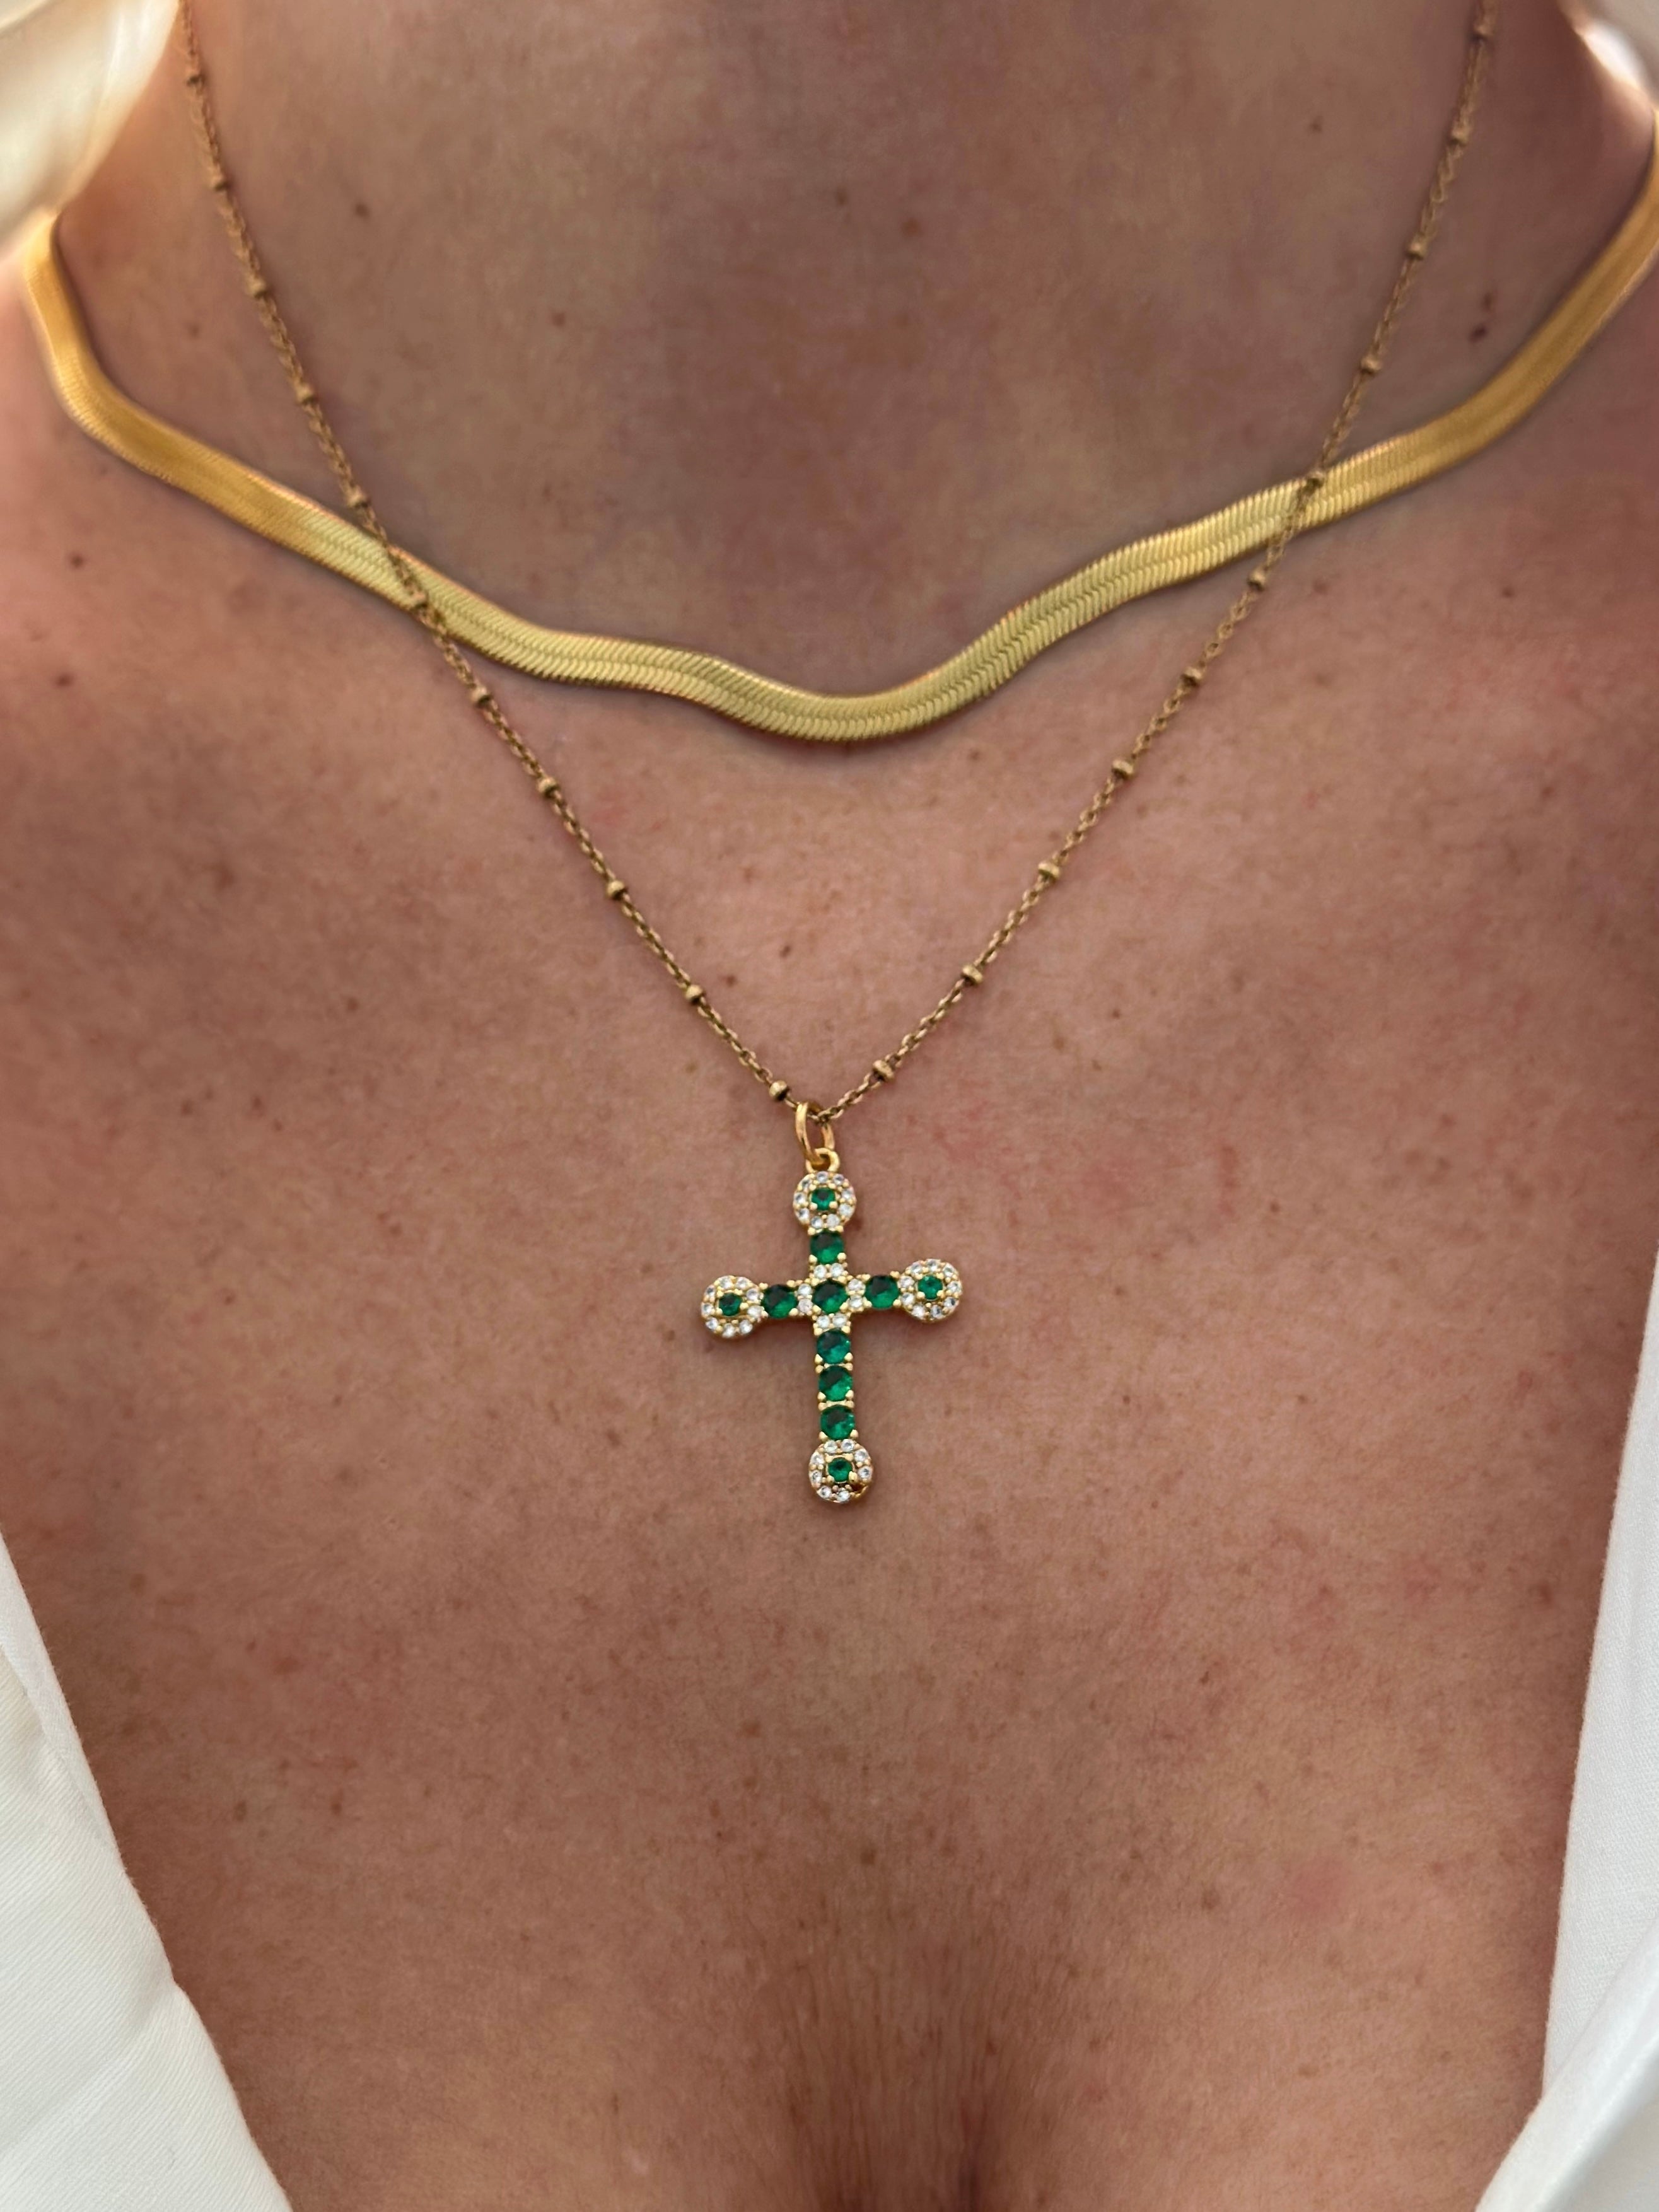 Green Jade Cross Necklace - Etsy | Cross necklace women, Jewelry lookbook, Cross  necklace